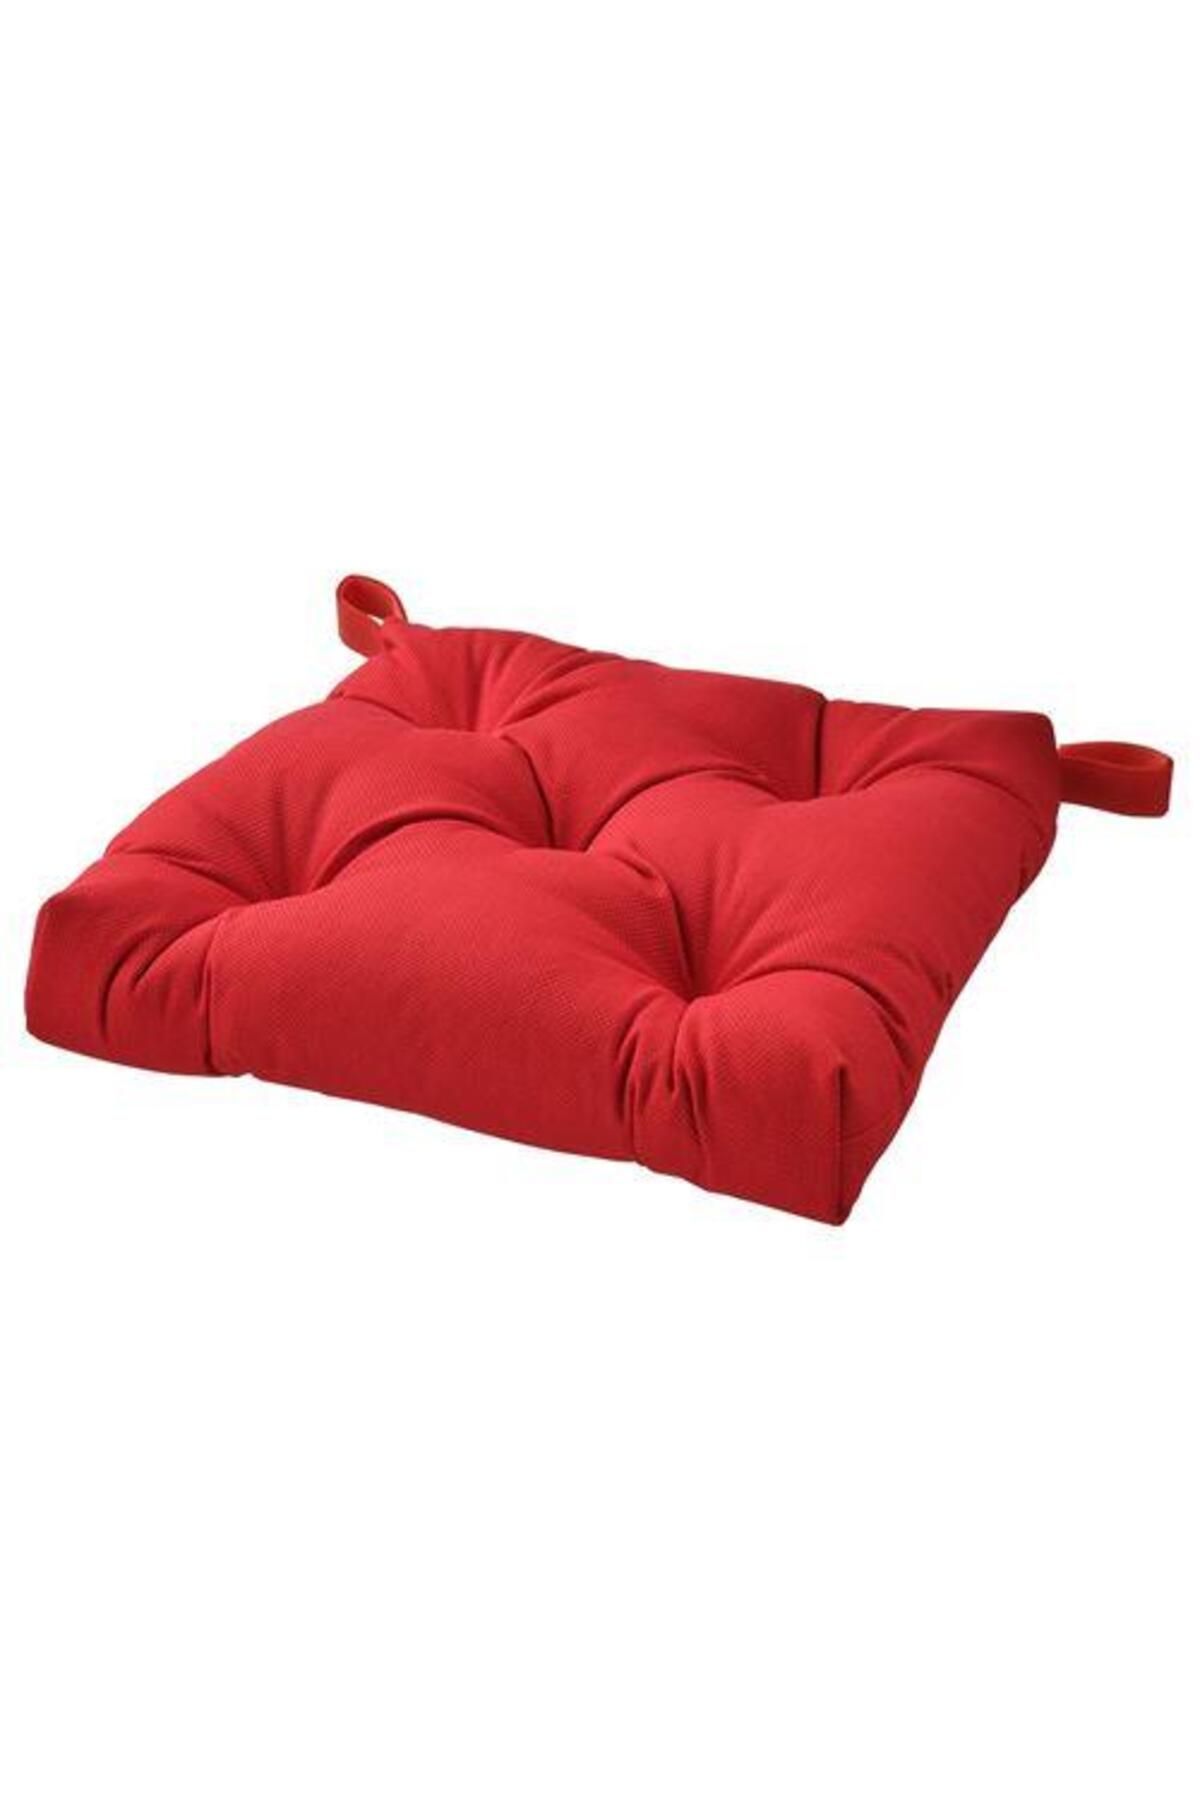 IKEA Sandalye Minderi Kırmızı Renk 40/35x38x7 Cm Meridyendukkan Cırt-cırtlı -pamuklu